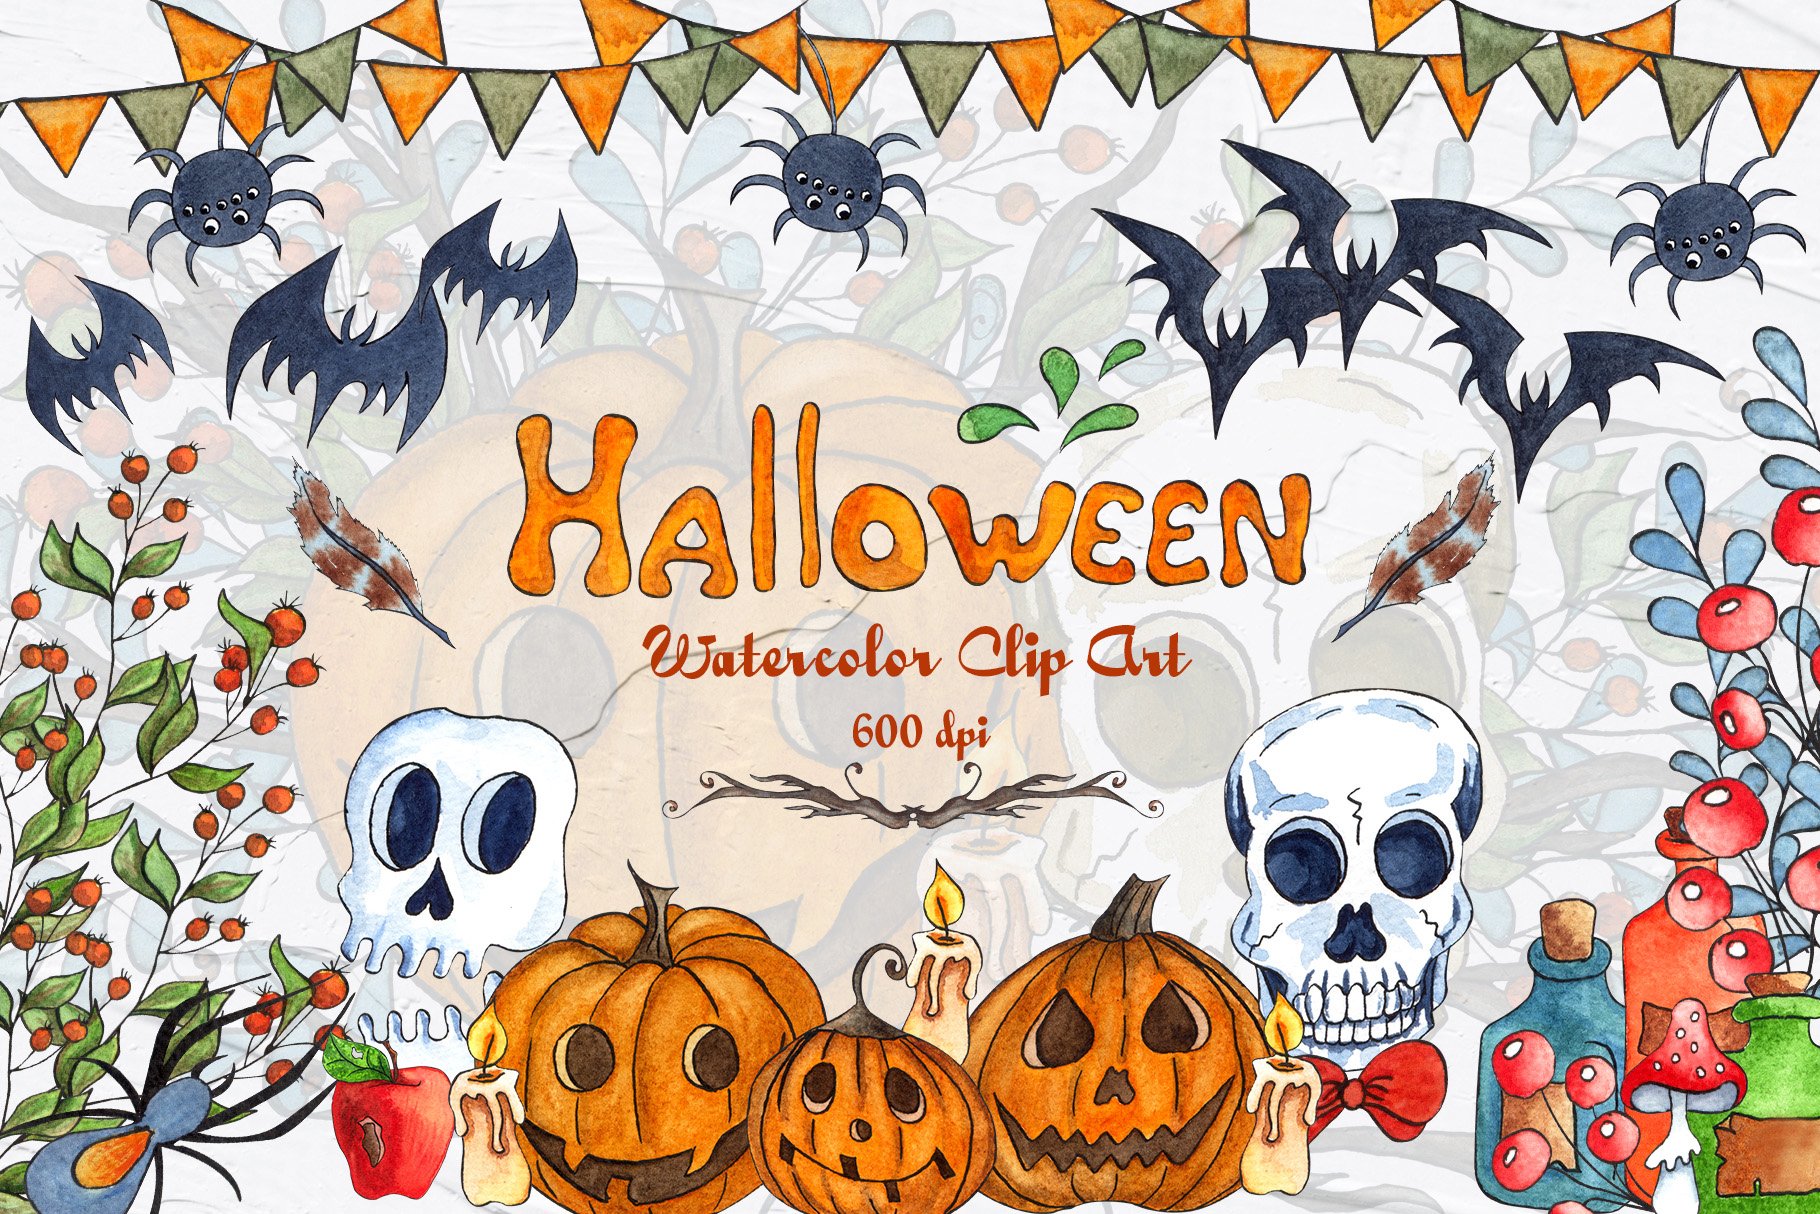 Halloween Watercolor Clipart